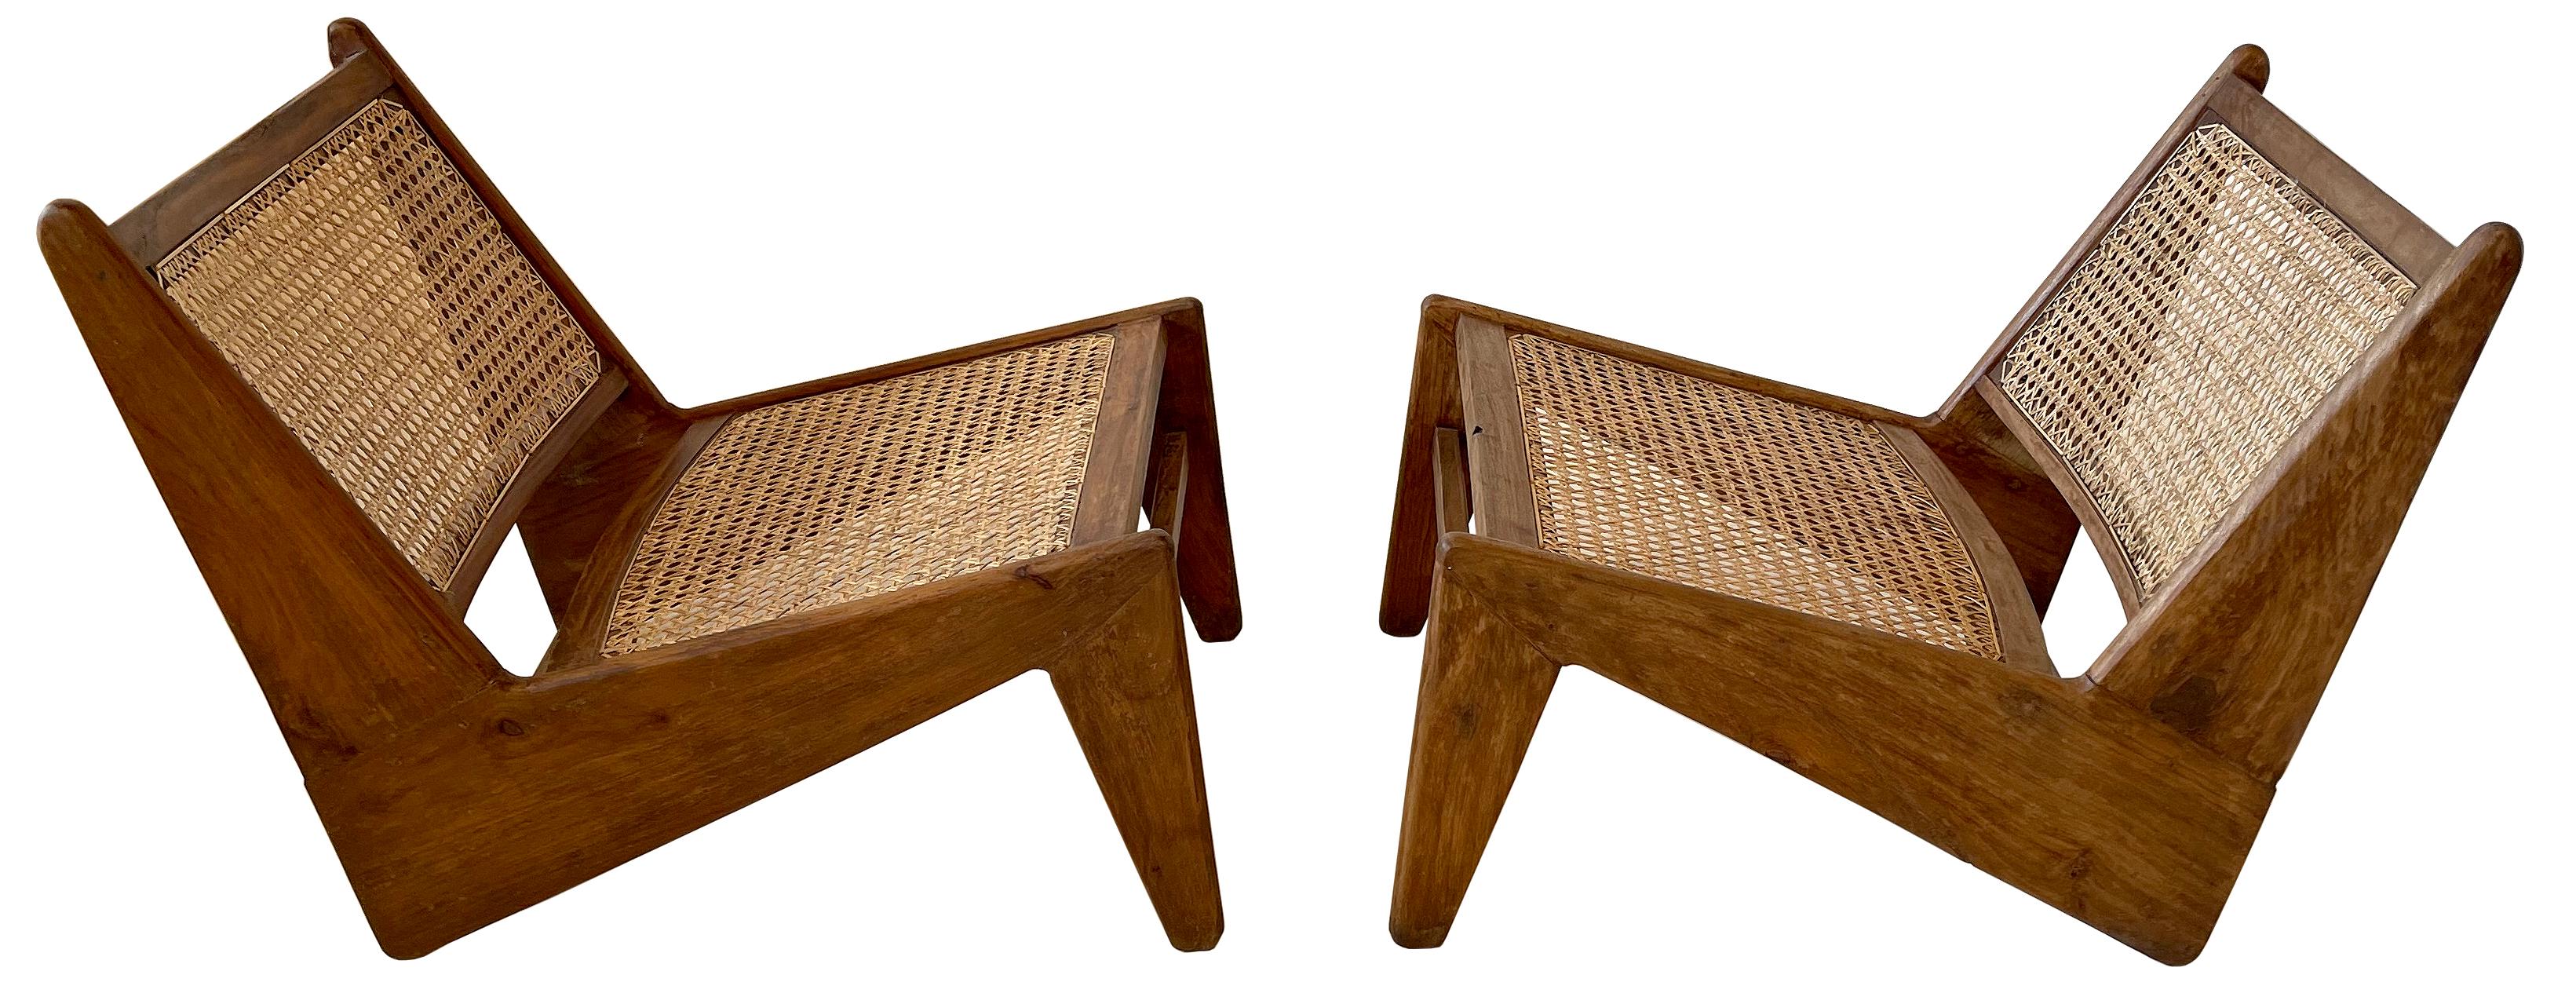 Une paire de chaises longues basses très rares en teck et en bois indien Sissoo.

Une véritable paire assortie, comme l'indique la désignation numérotée à l'arrière des dossiers de siège. 
Dans un bel état de restauration sympathique. J'ai fixé